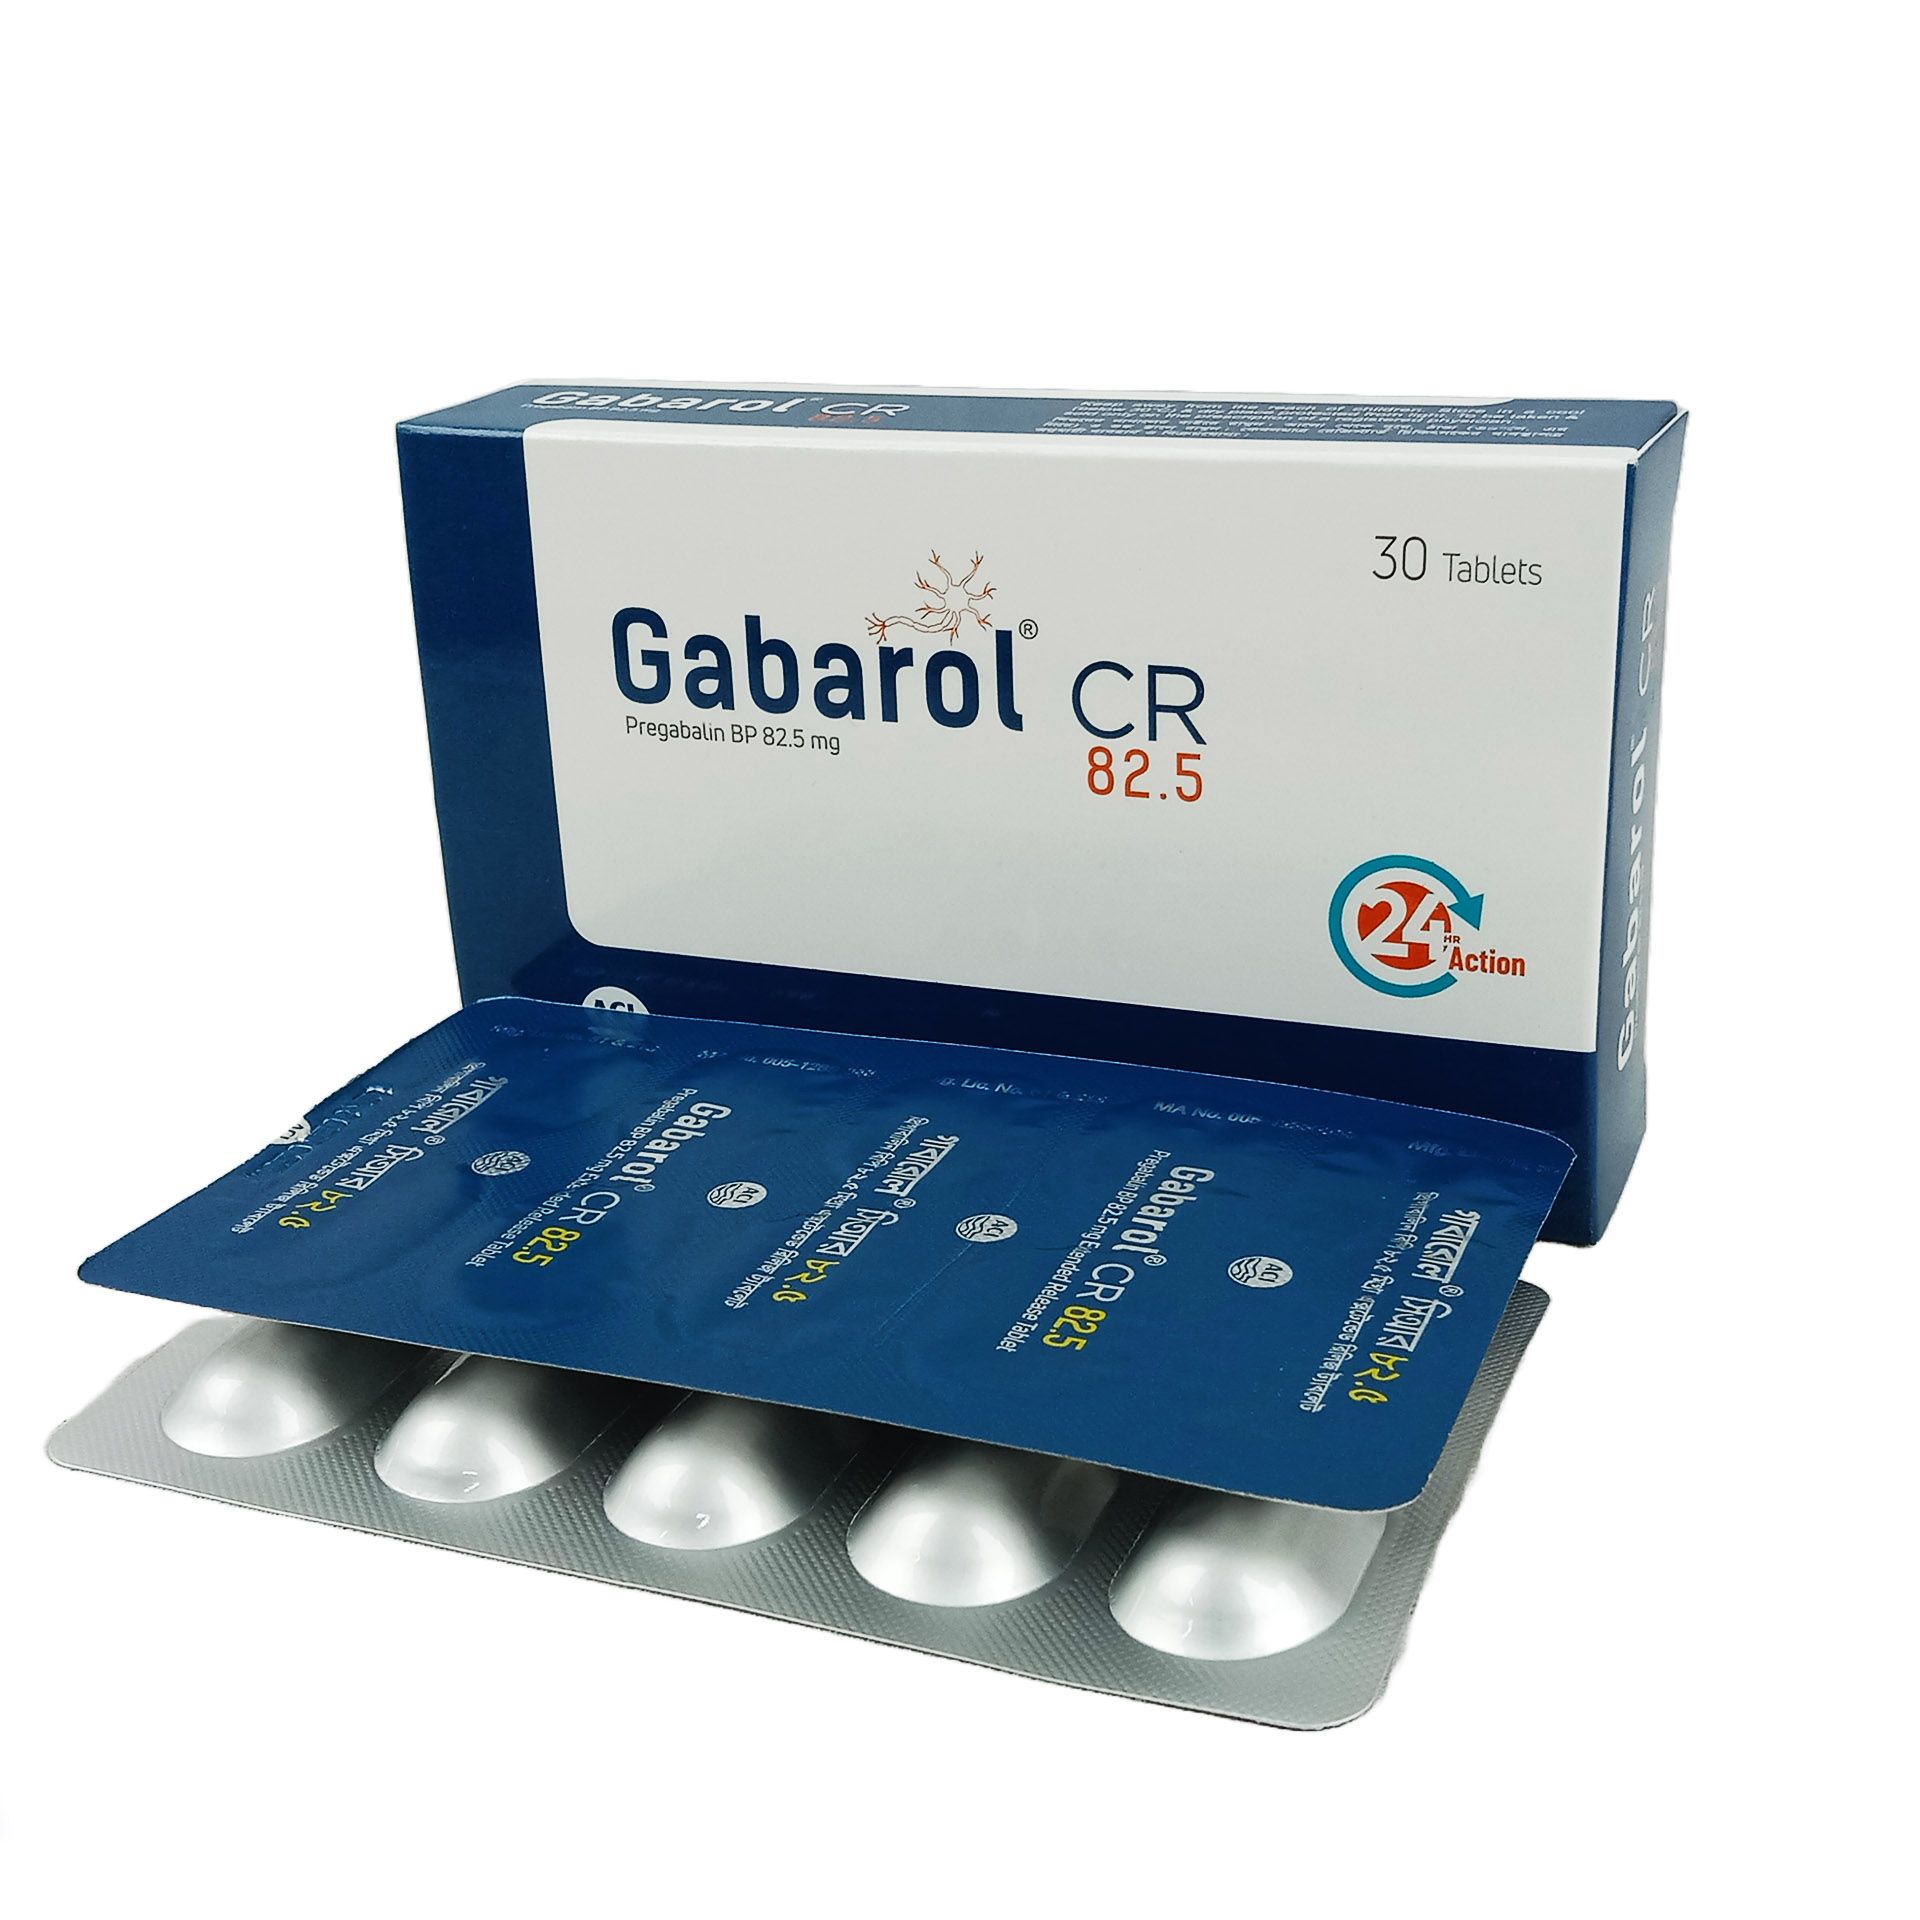 Gabarol CR 82.5 82.5mg Tablet